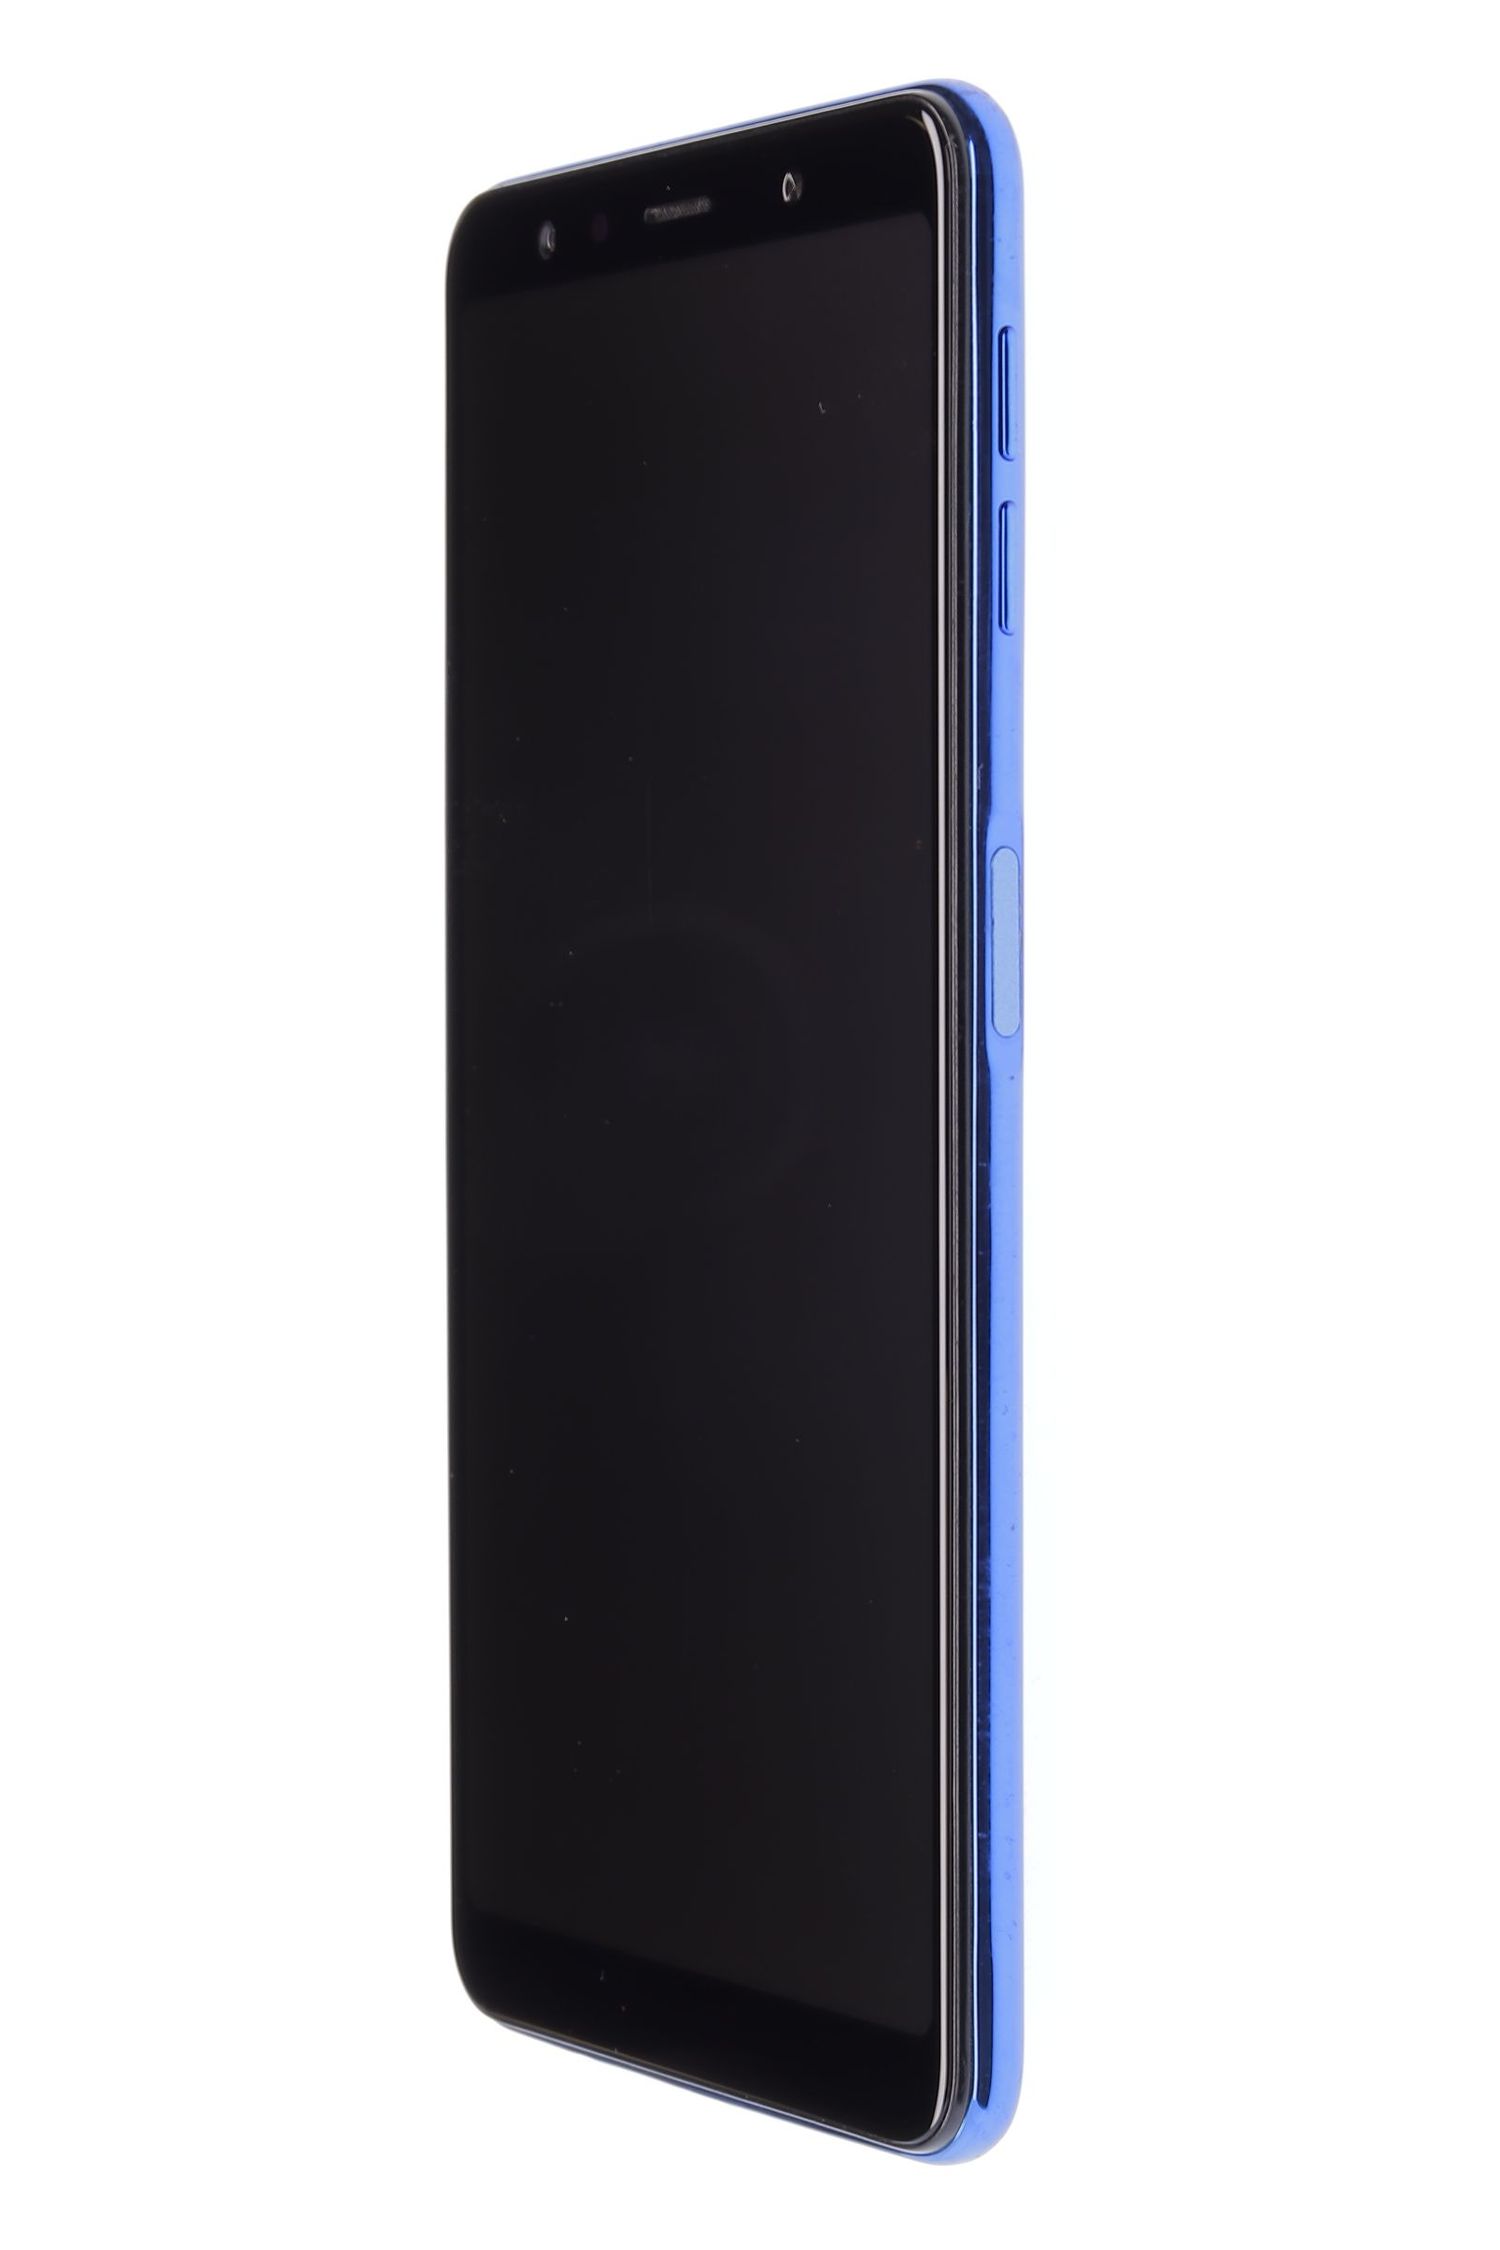 Telefon mobil Samsung Galaxy A7 (2018) Dual Sim, Blue, 64 GB, Foarte Bun